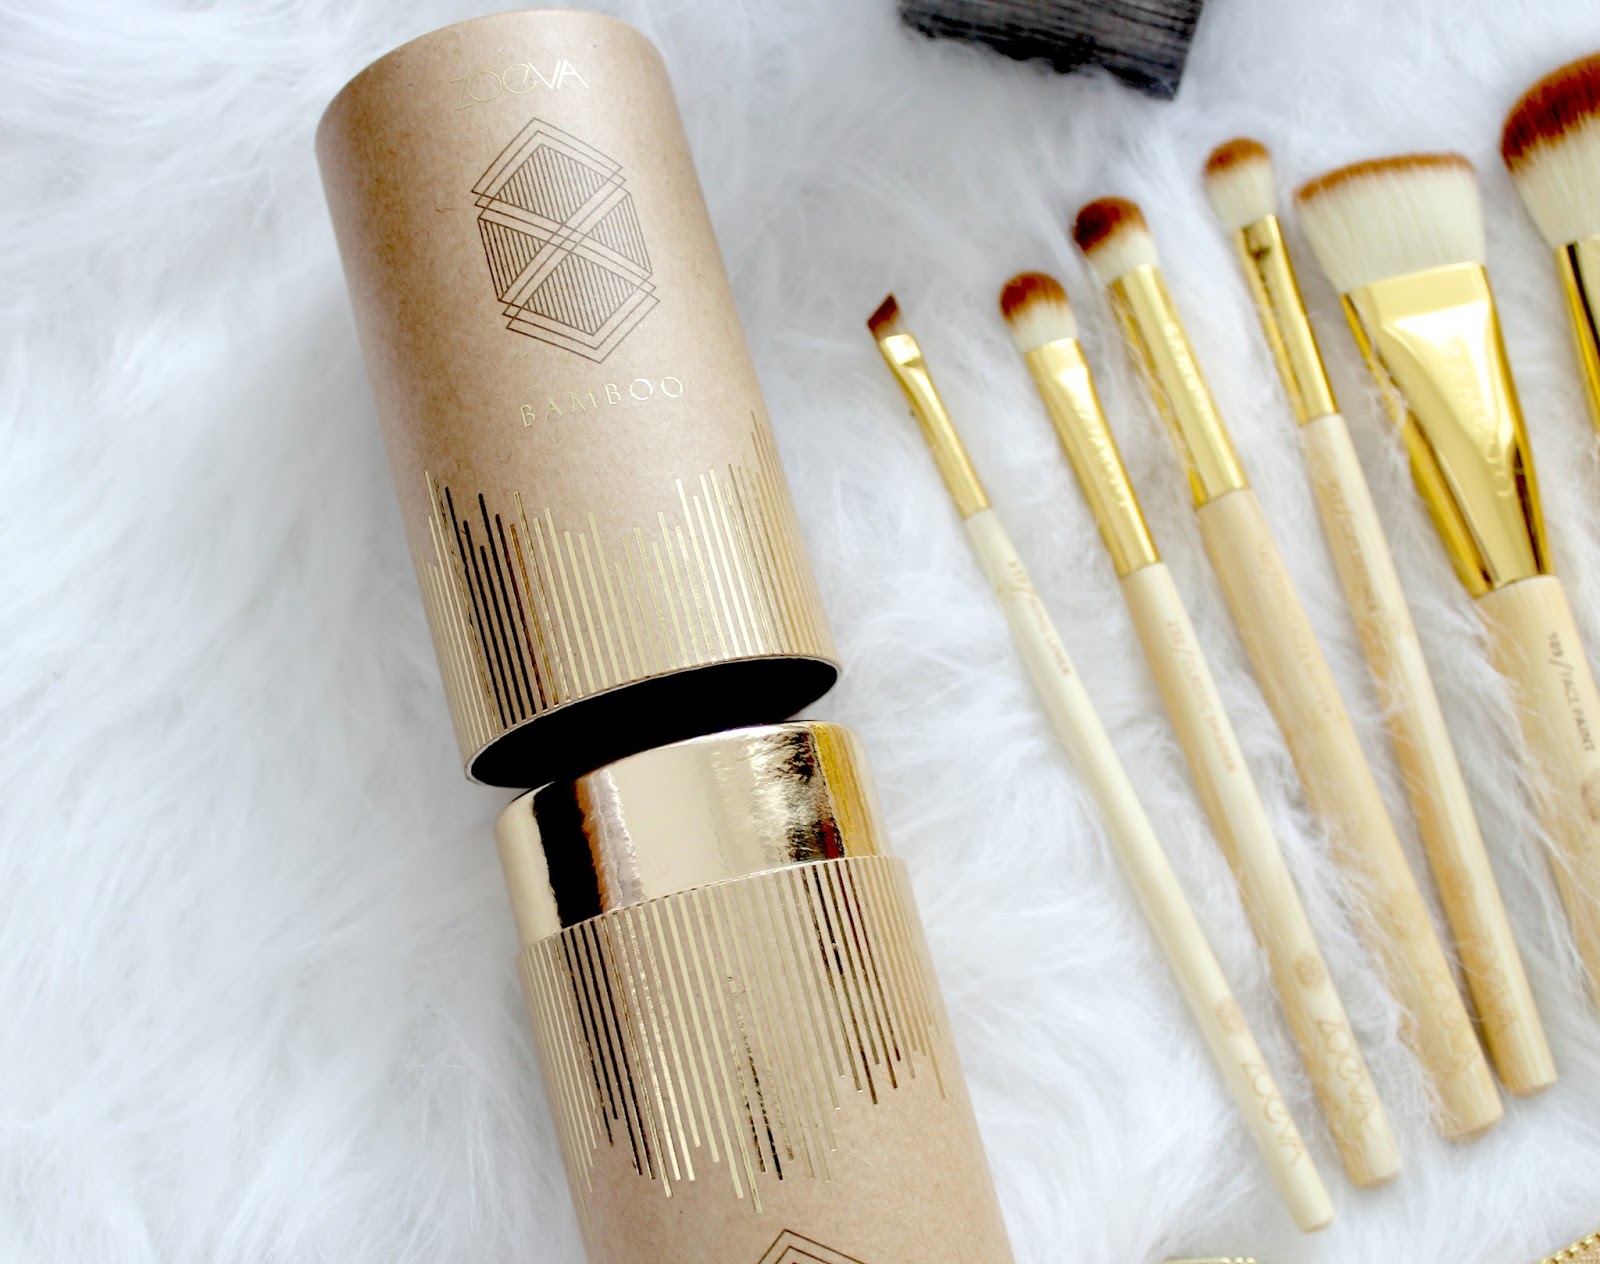 Cyclopen Citroen plan Zoeva Bamboo Vol 2 Brush Set Review | Couture Girl